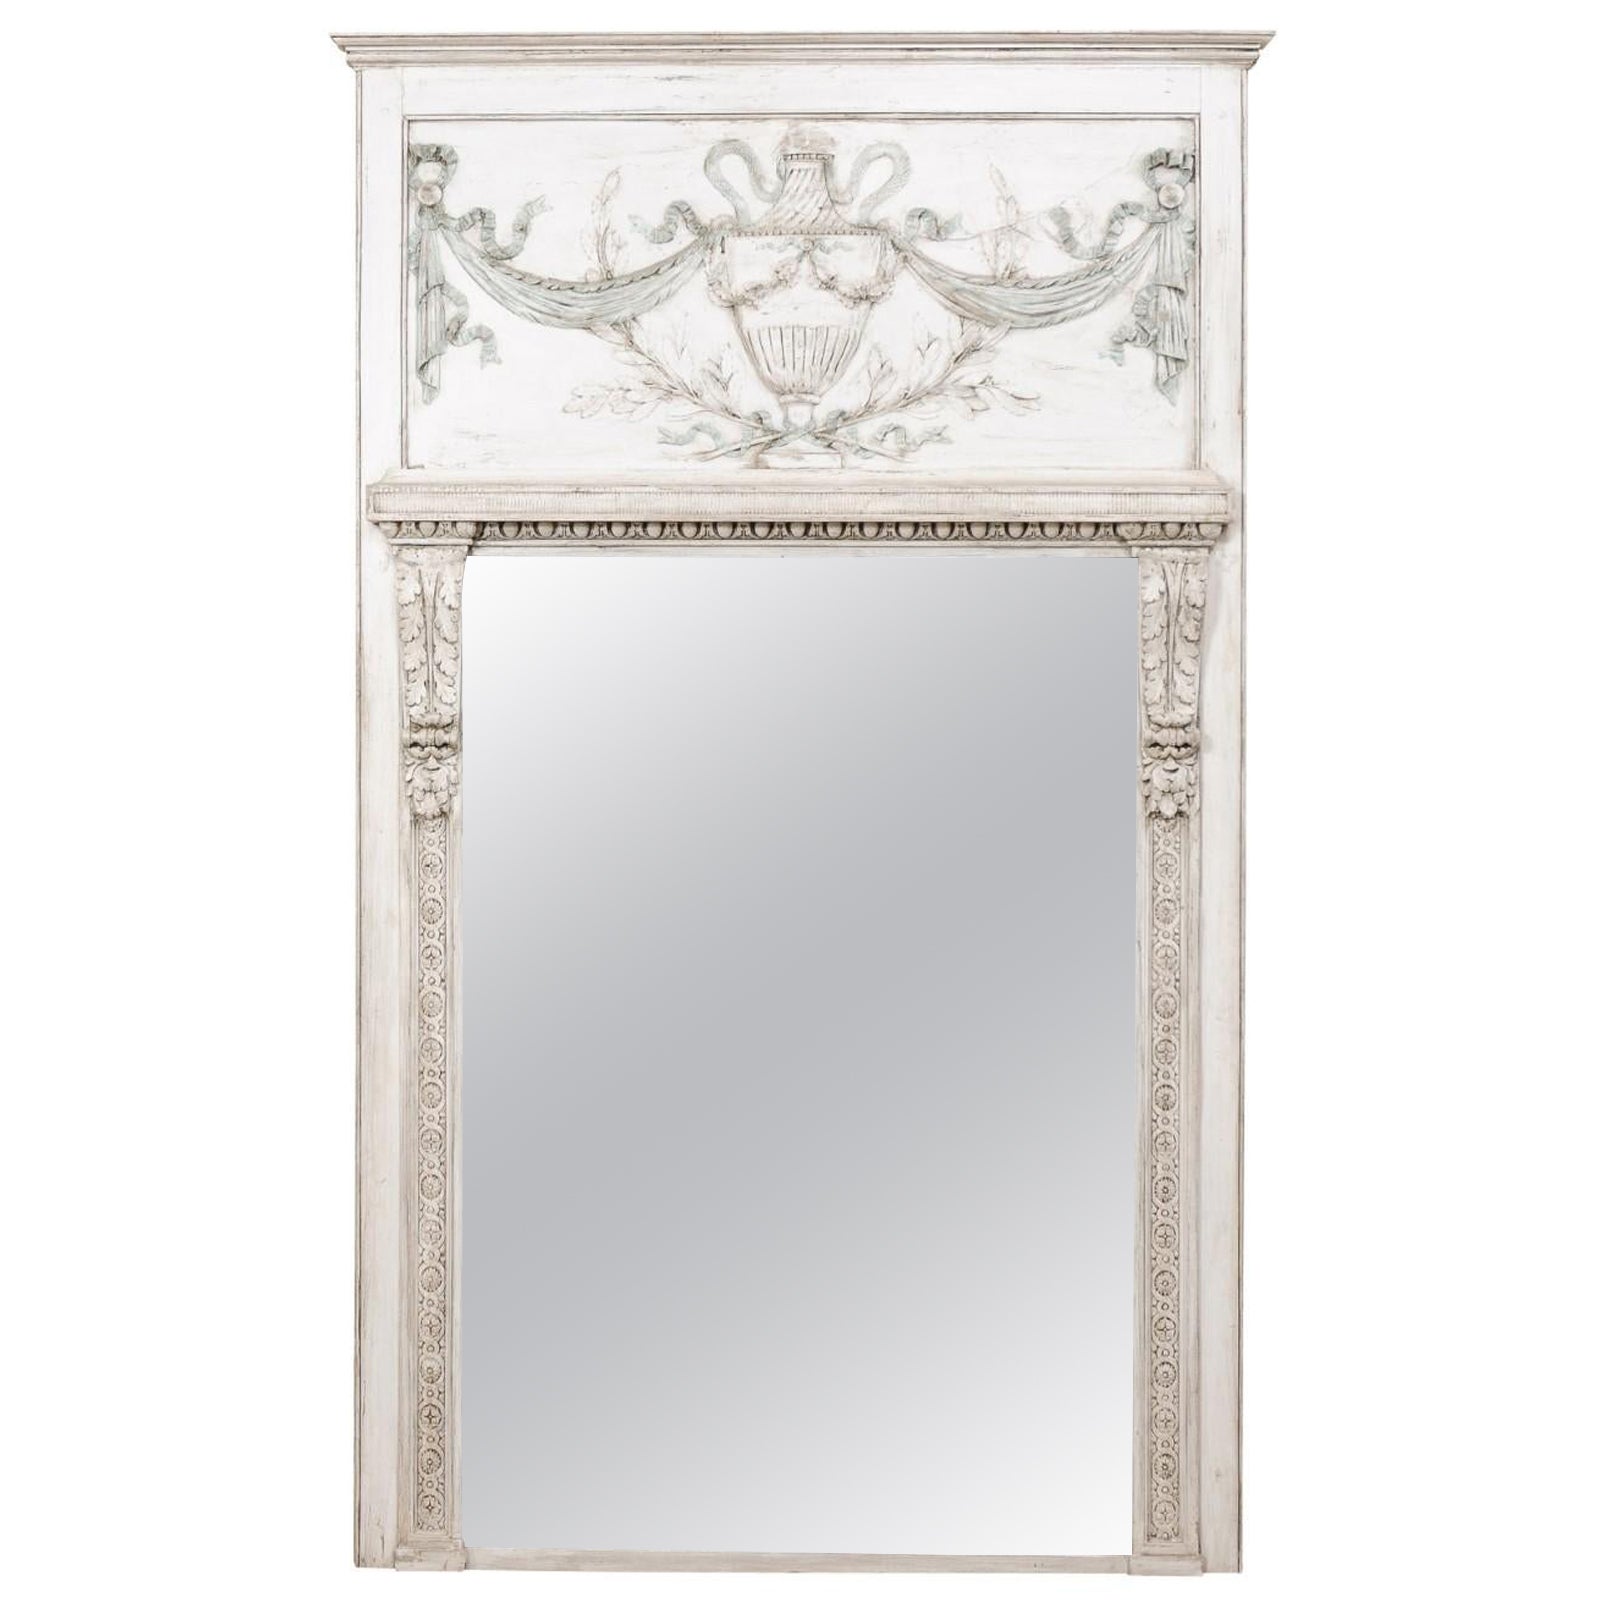 Französisch Neoklassischen Stil Trumeau Spiegel, 7+ Ft